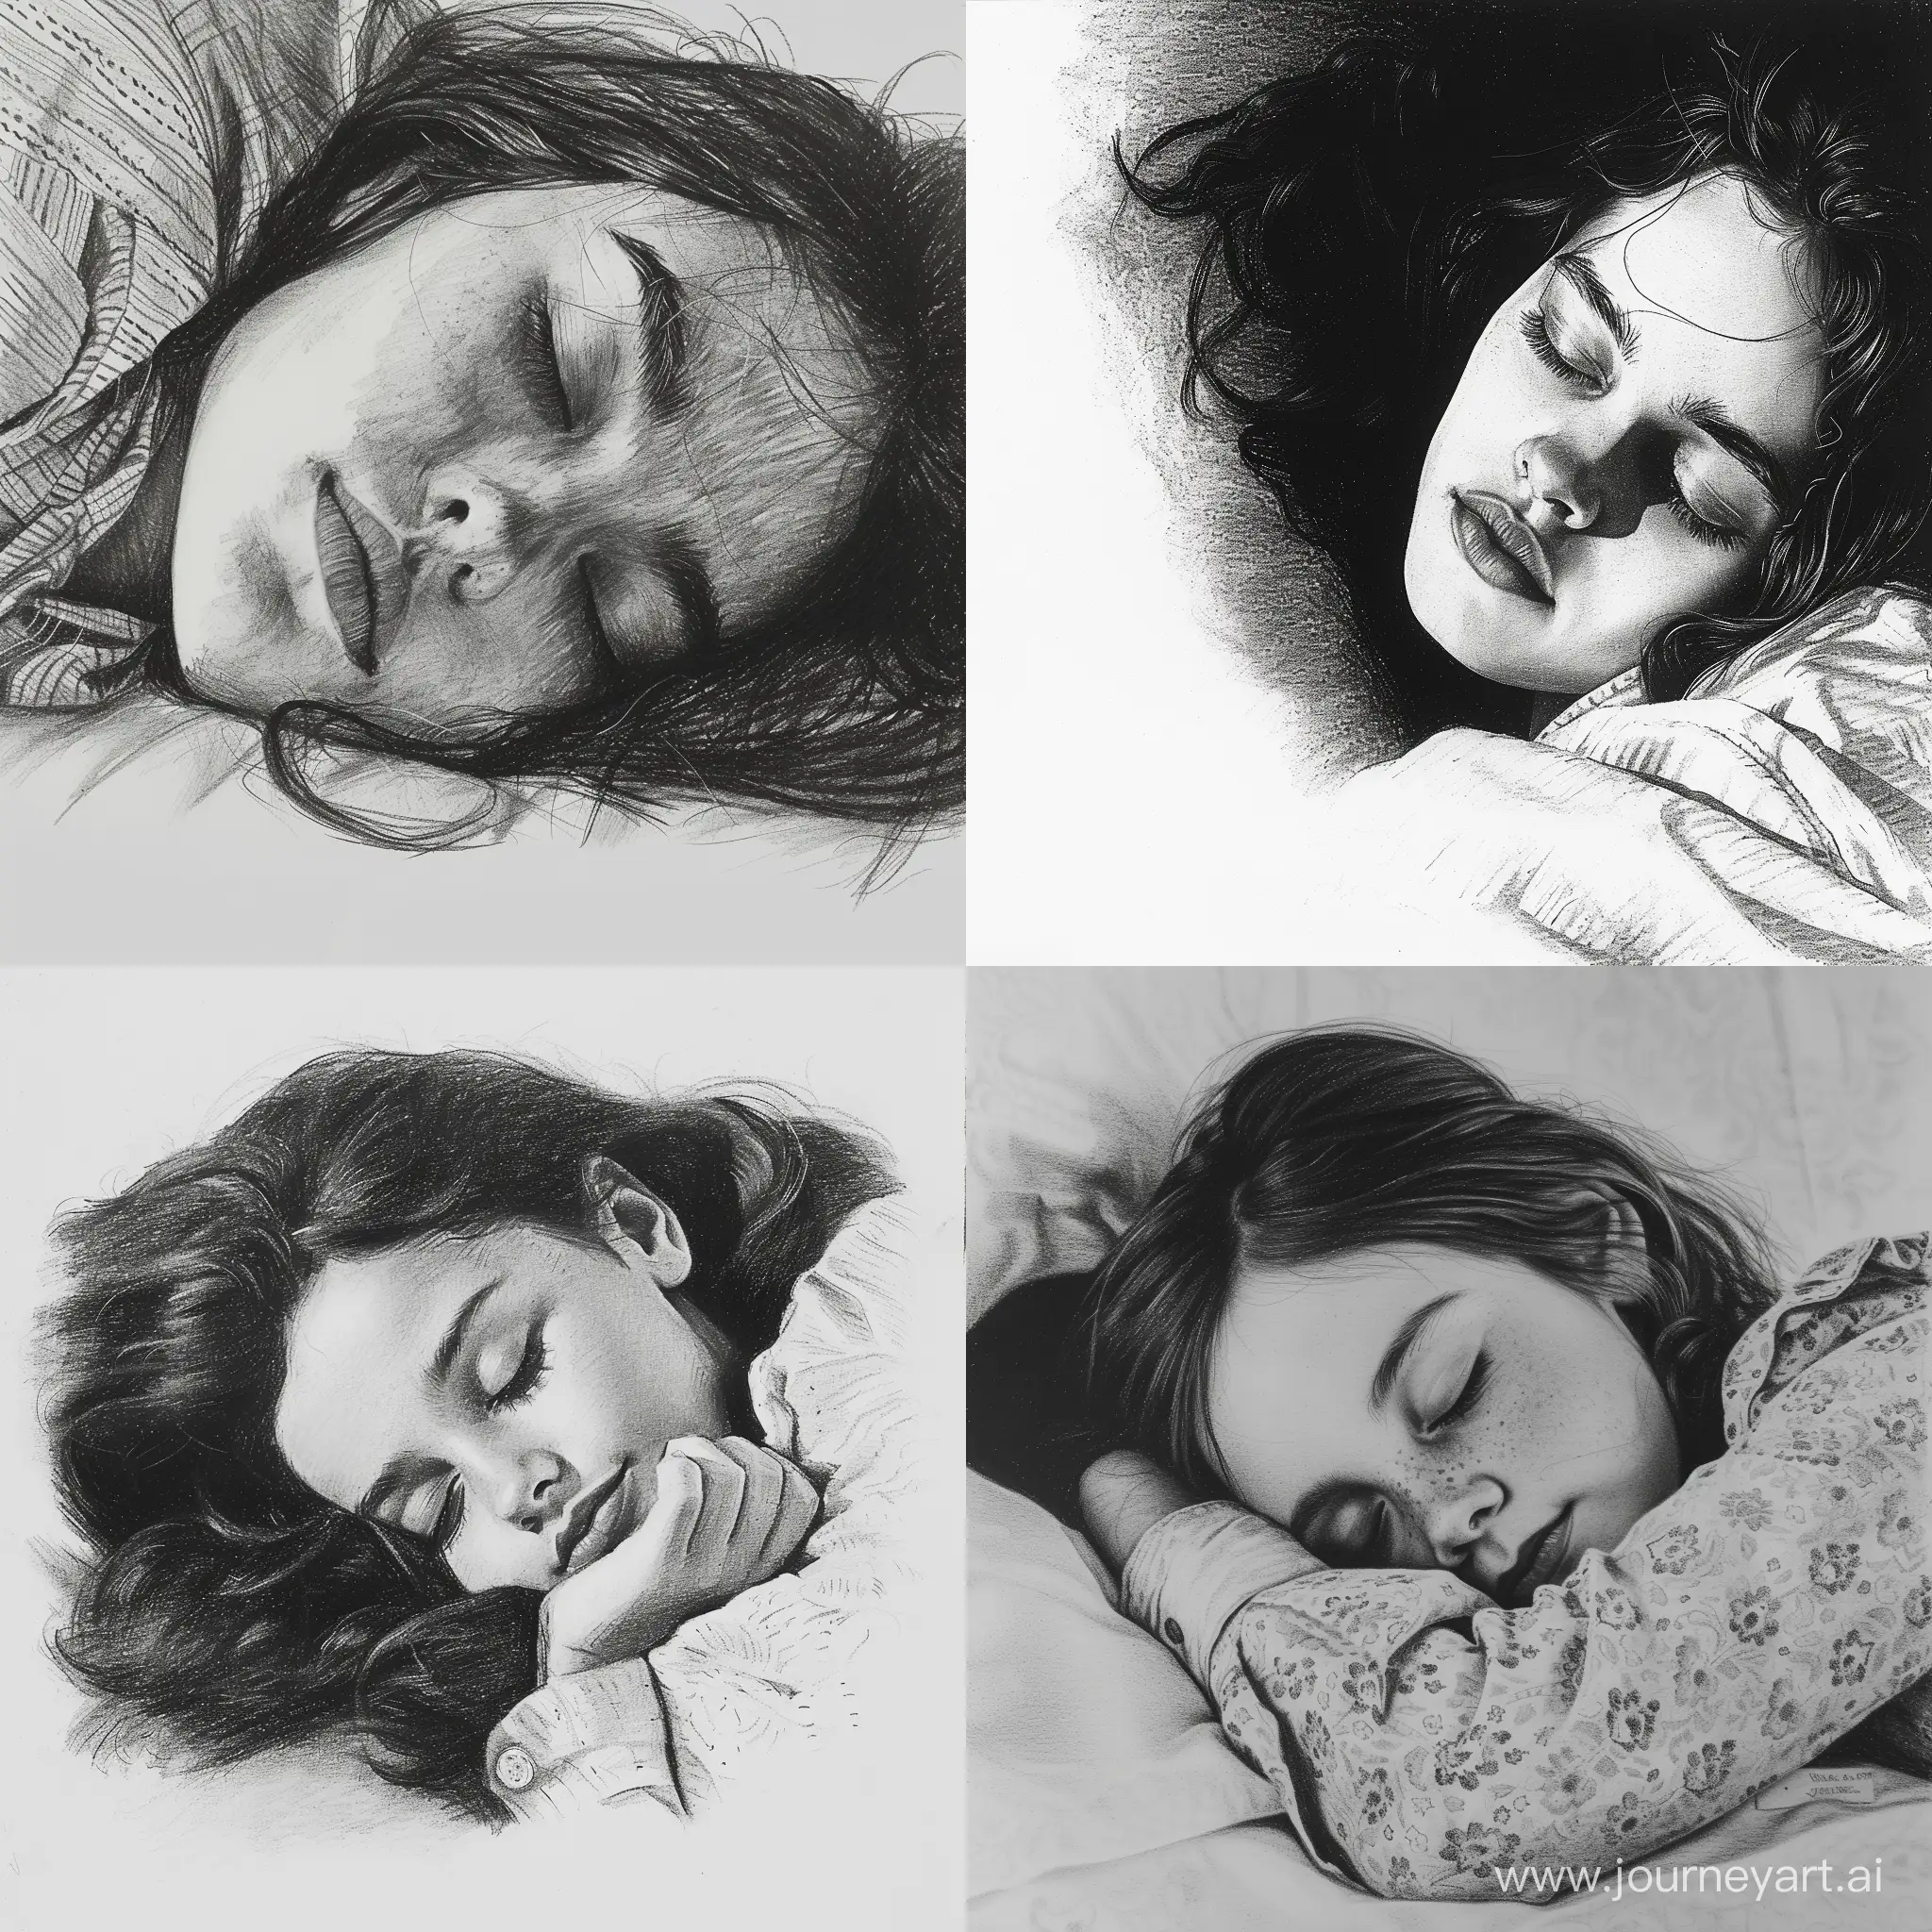 спящая девочка. рисунок карандашом и углем.
